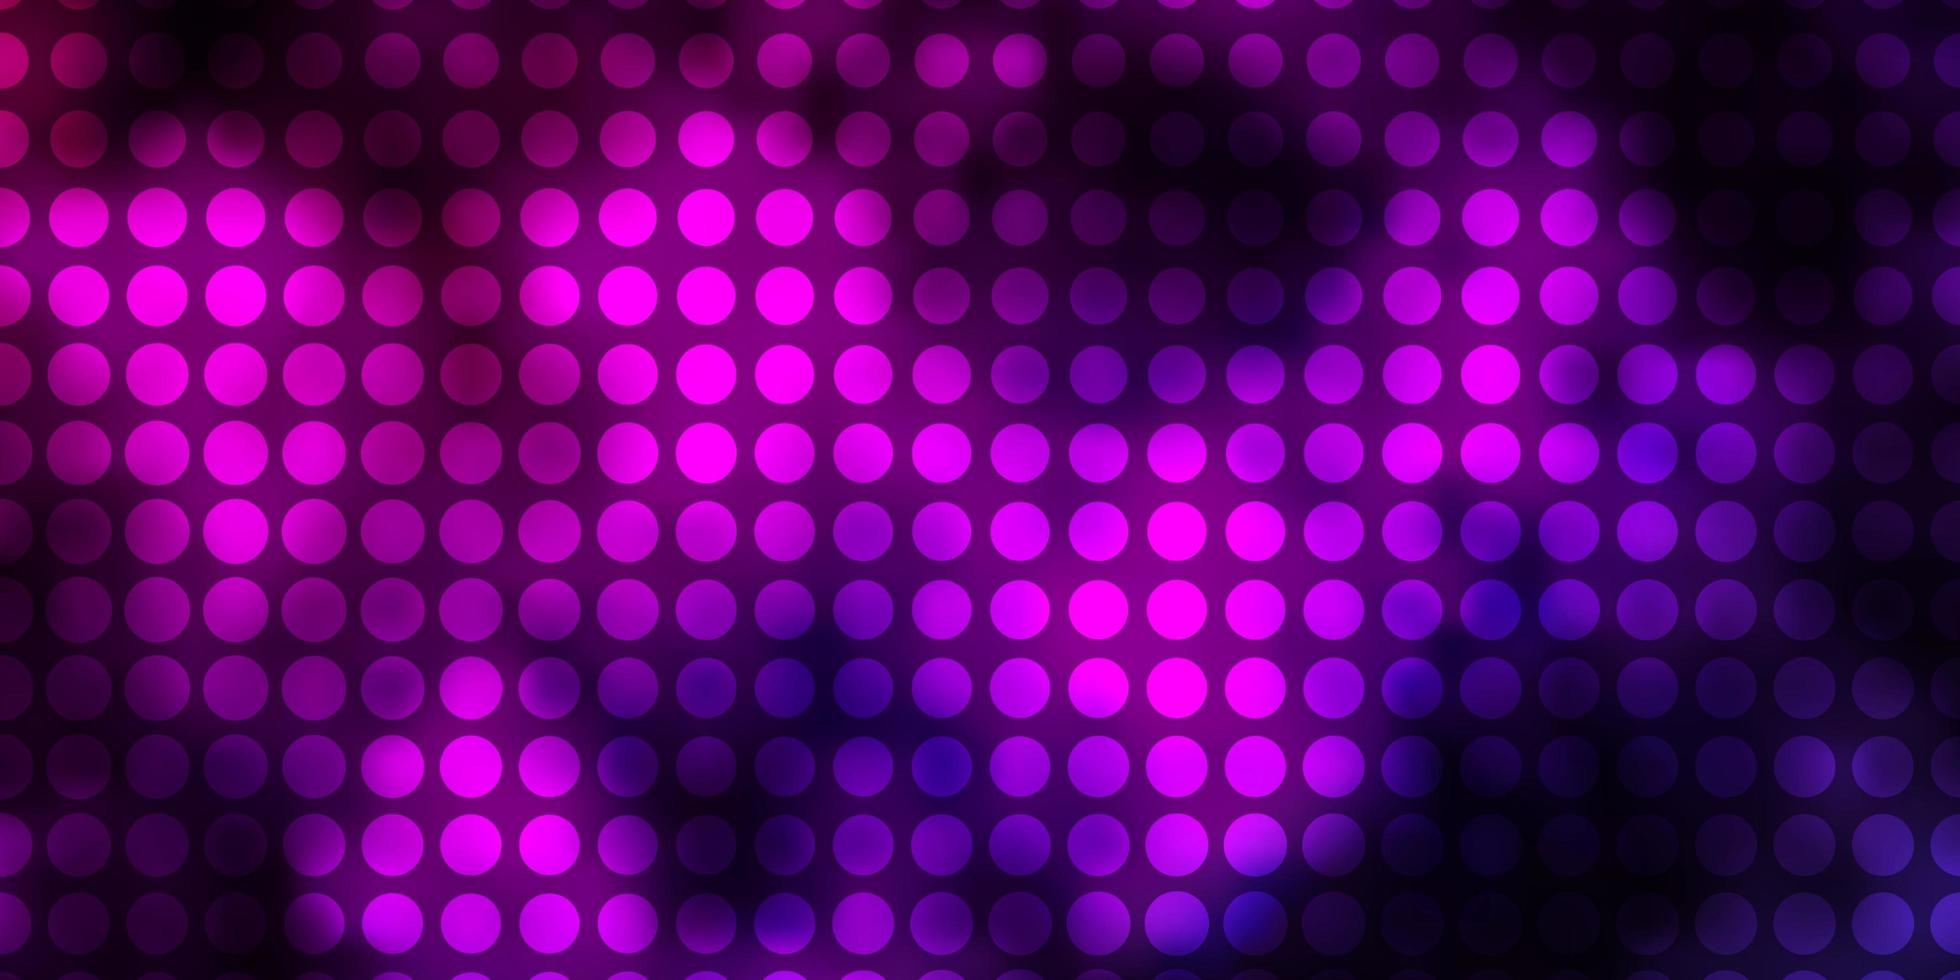 modello vettoriale rosa scuro con cerchi. illustrazione astratta glitterata con gocce colorate. modello per sfondi, tende.